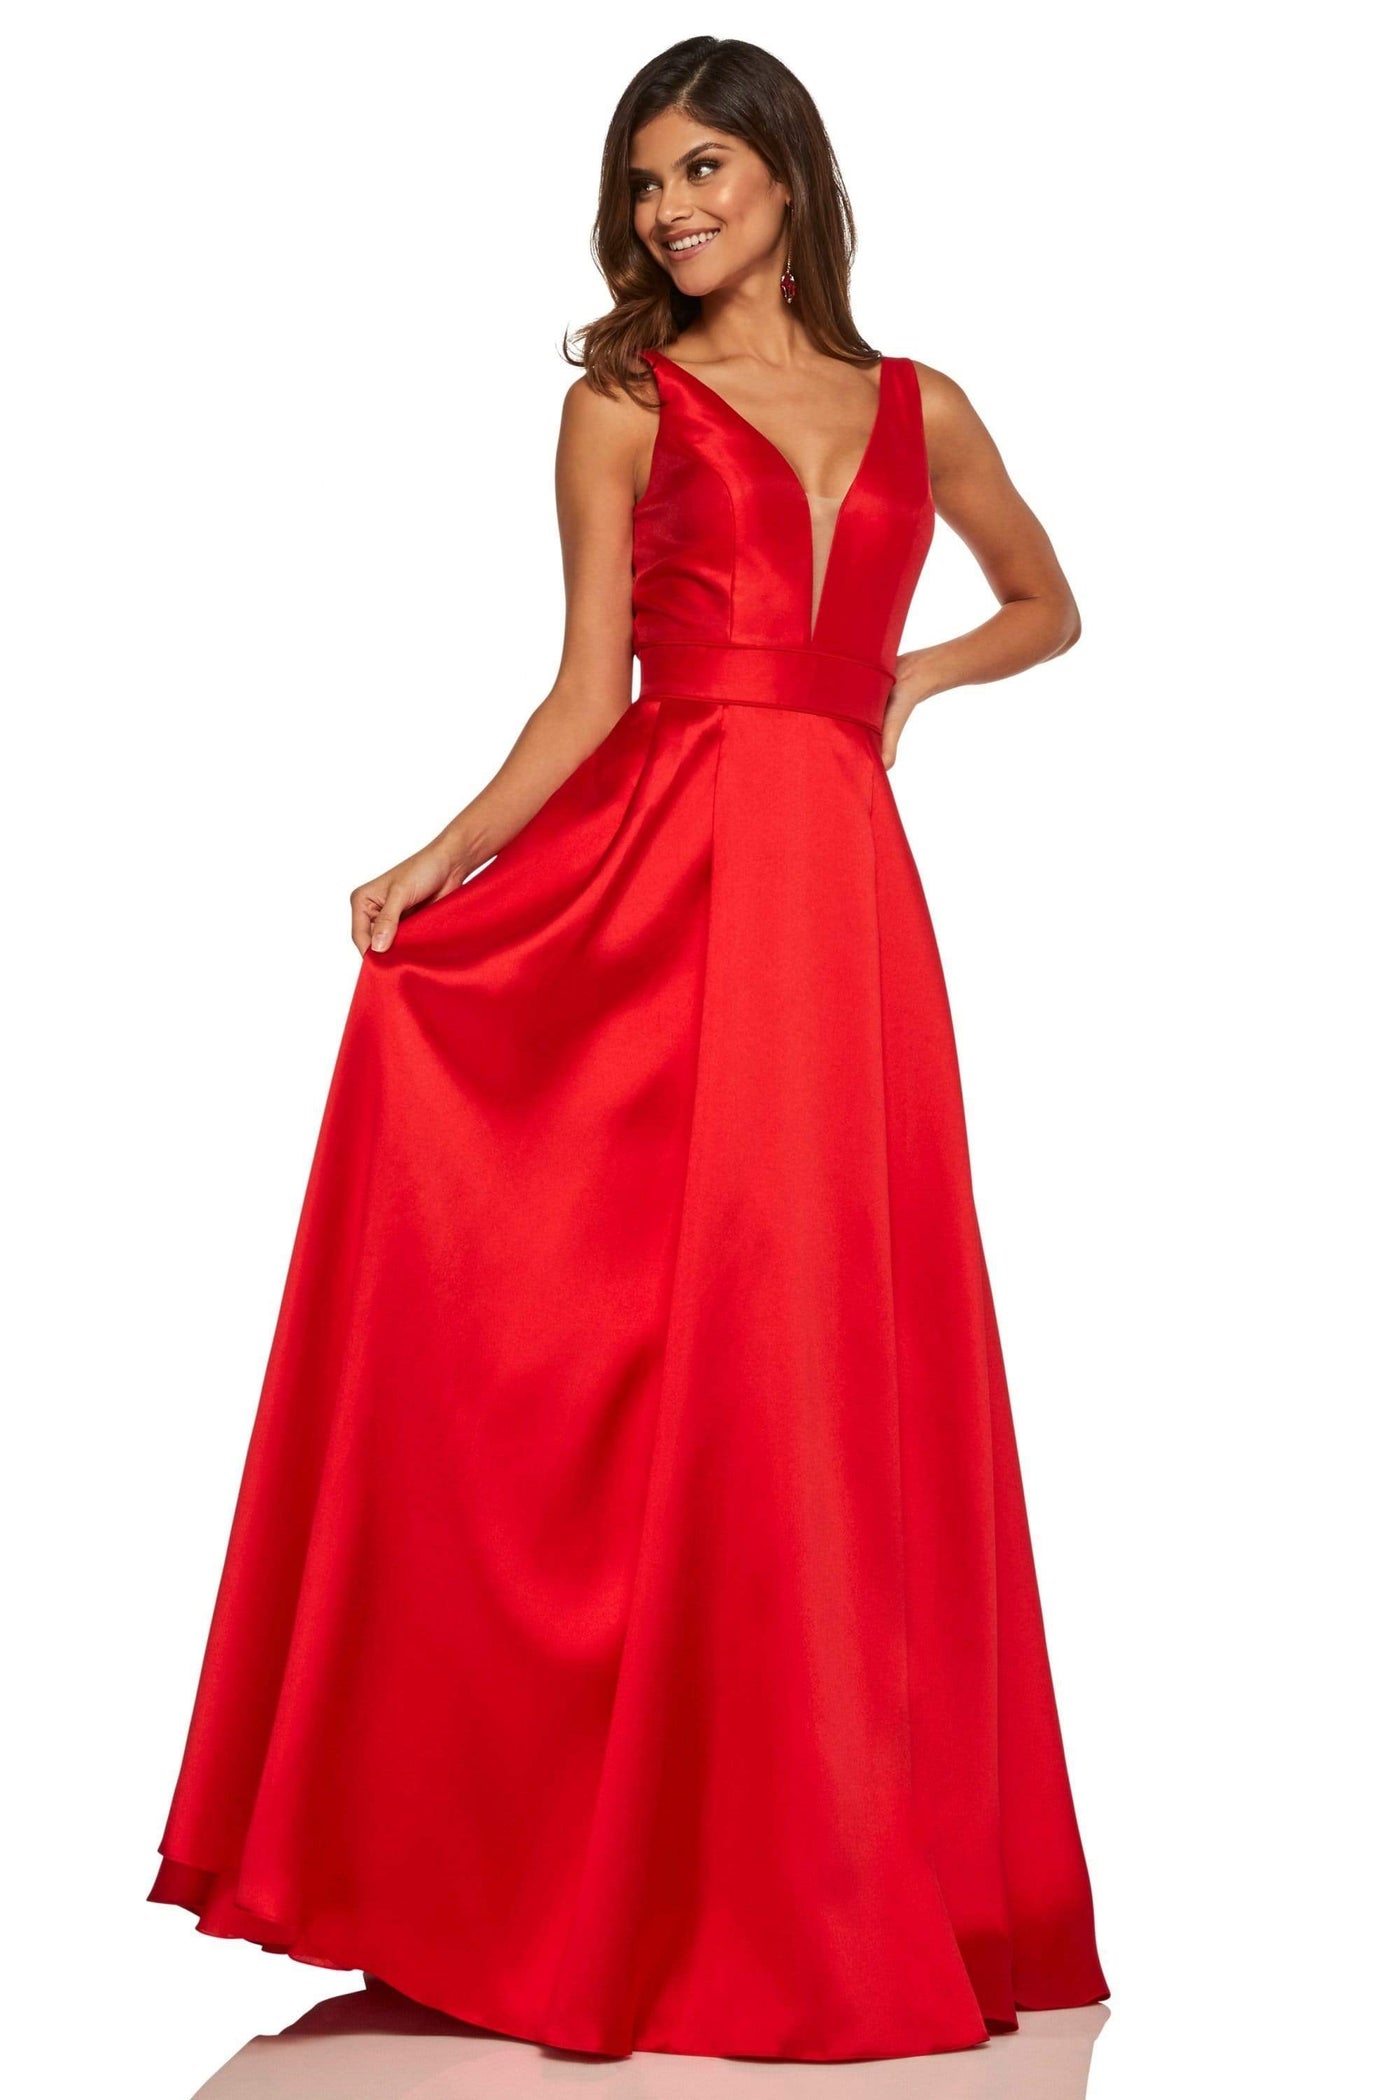 Sherri Hill - 52502 Sherri Hill Taffeta A Line Dress Evening Dresses 00 / Red